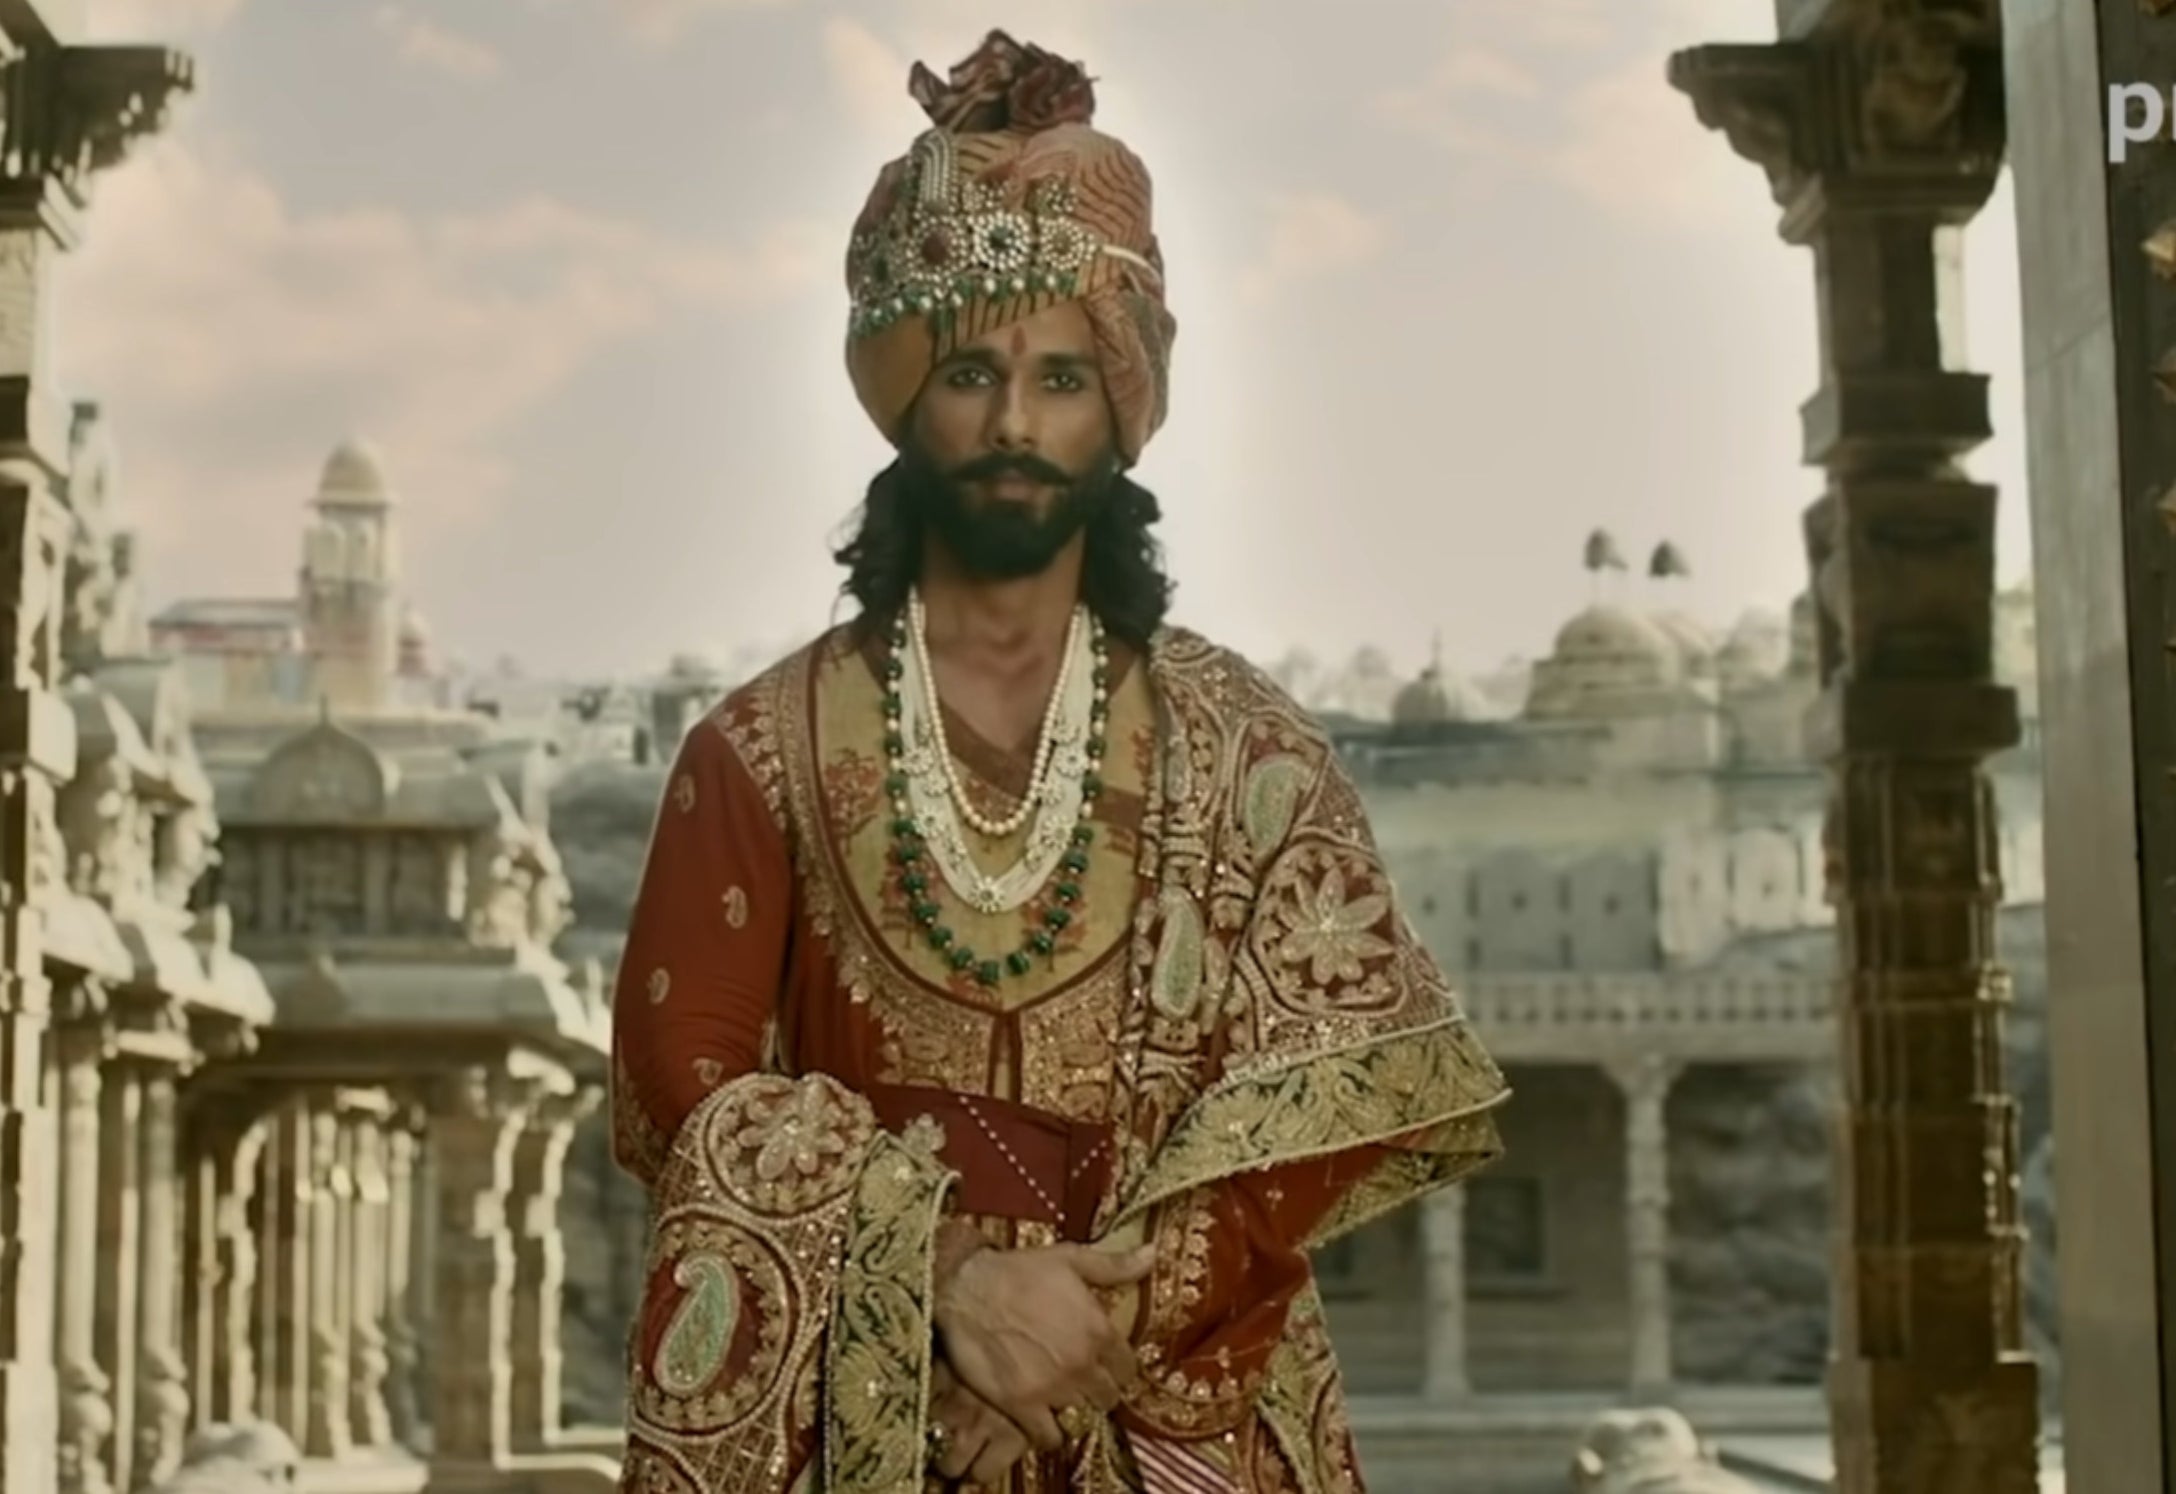 Shahid Kapoor dressed as a Rajasthani king